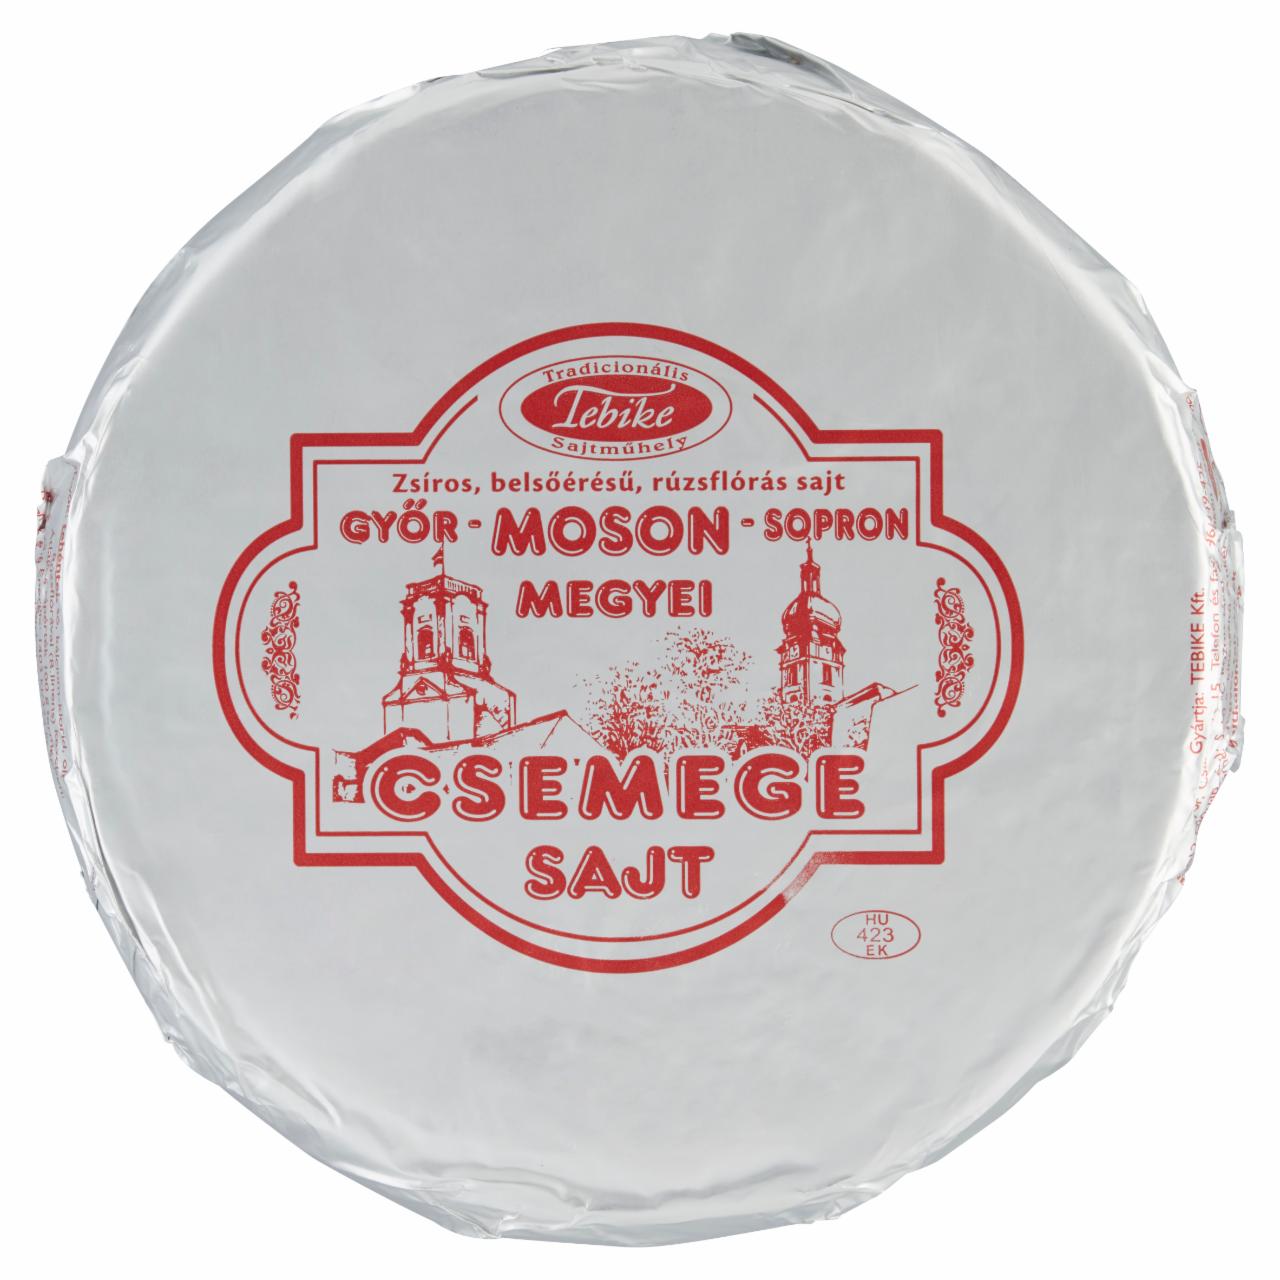 Képek - Tebike Győr-Moson-Sopron megyei Ilmici csemege sajt